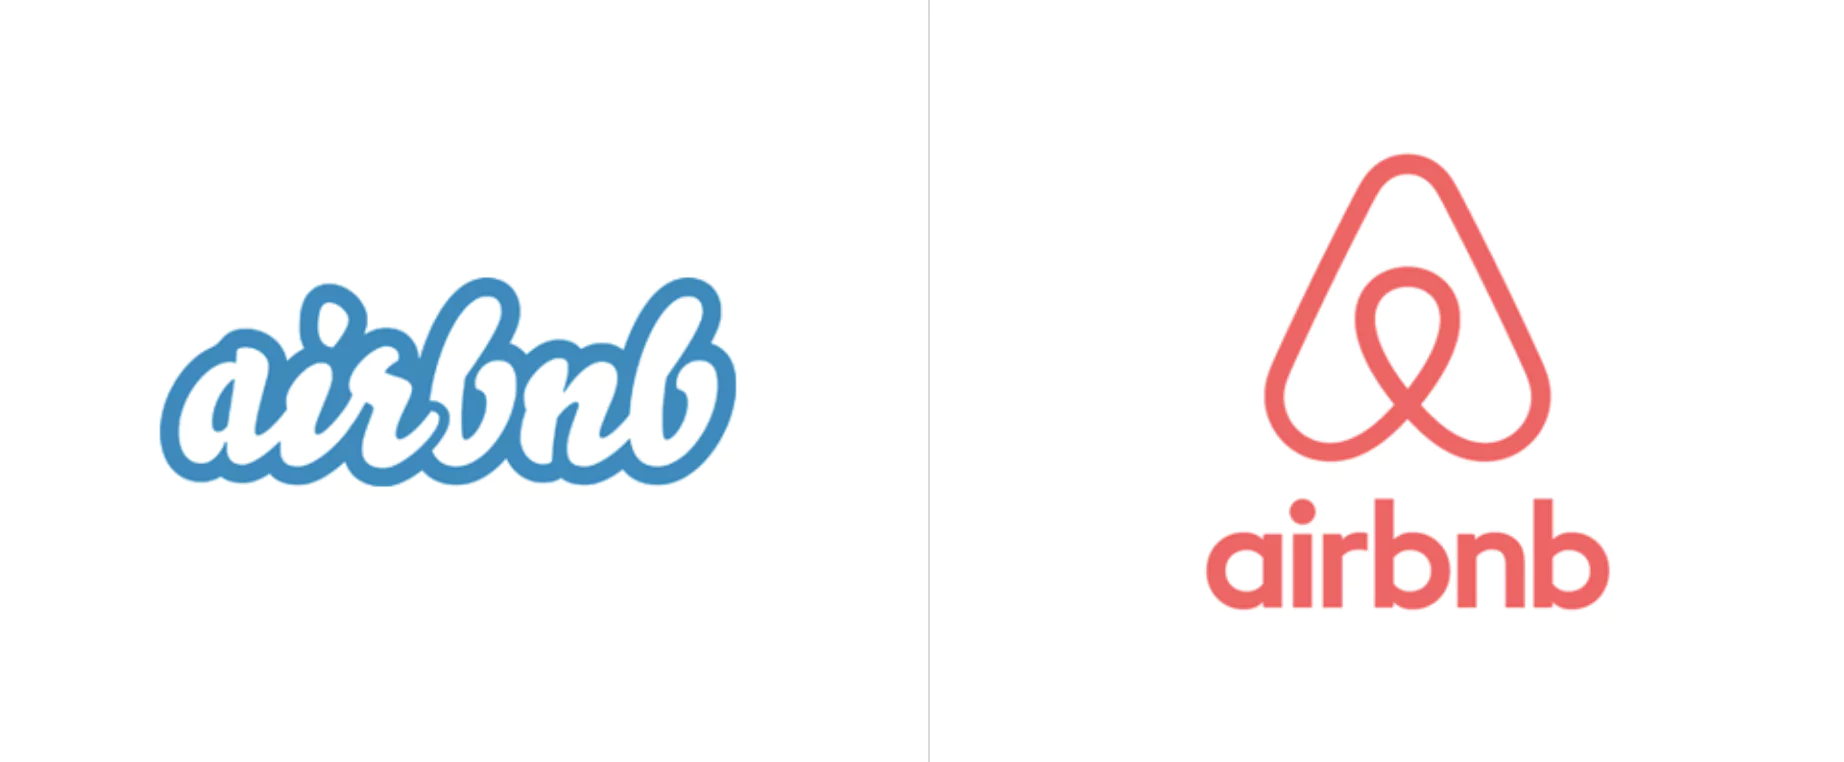 Comparación de logotipos de Airbnb: antiguo logotipo blanco/azul a la izquierda, nuevo logotipo rosa/rojo a la derecha con el símbolo de una casa en forma de corazón